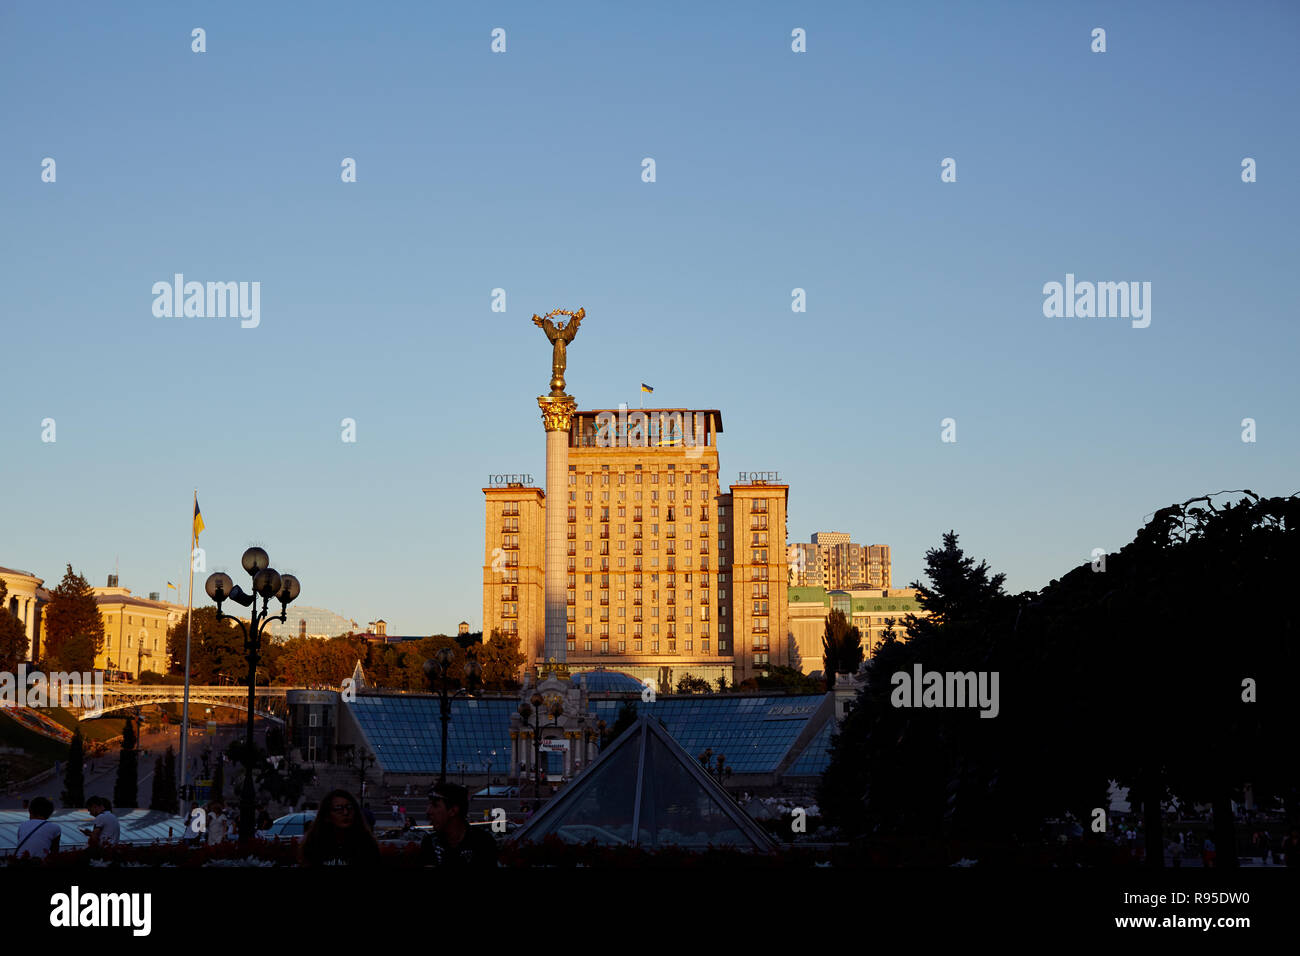 Kiev, Ukraine June 29, 2018 - View of the Ukraina Hotel and the victory column in Maidan Nezalezhnosti independence square in Kiev, Ukraine Stock Photo